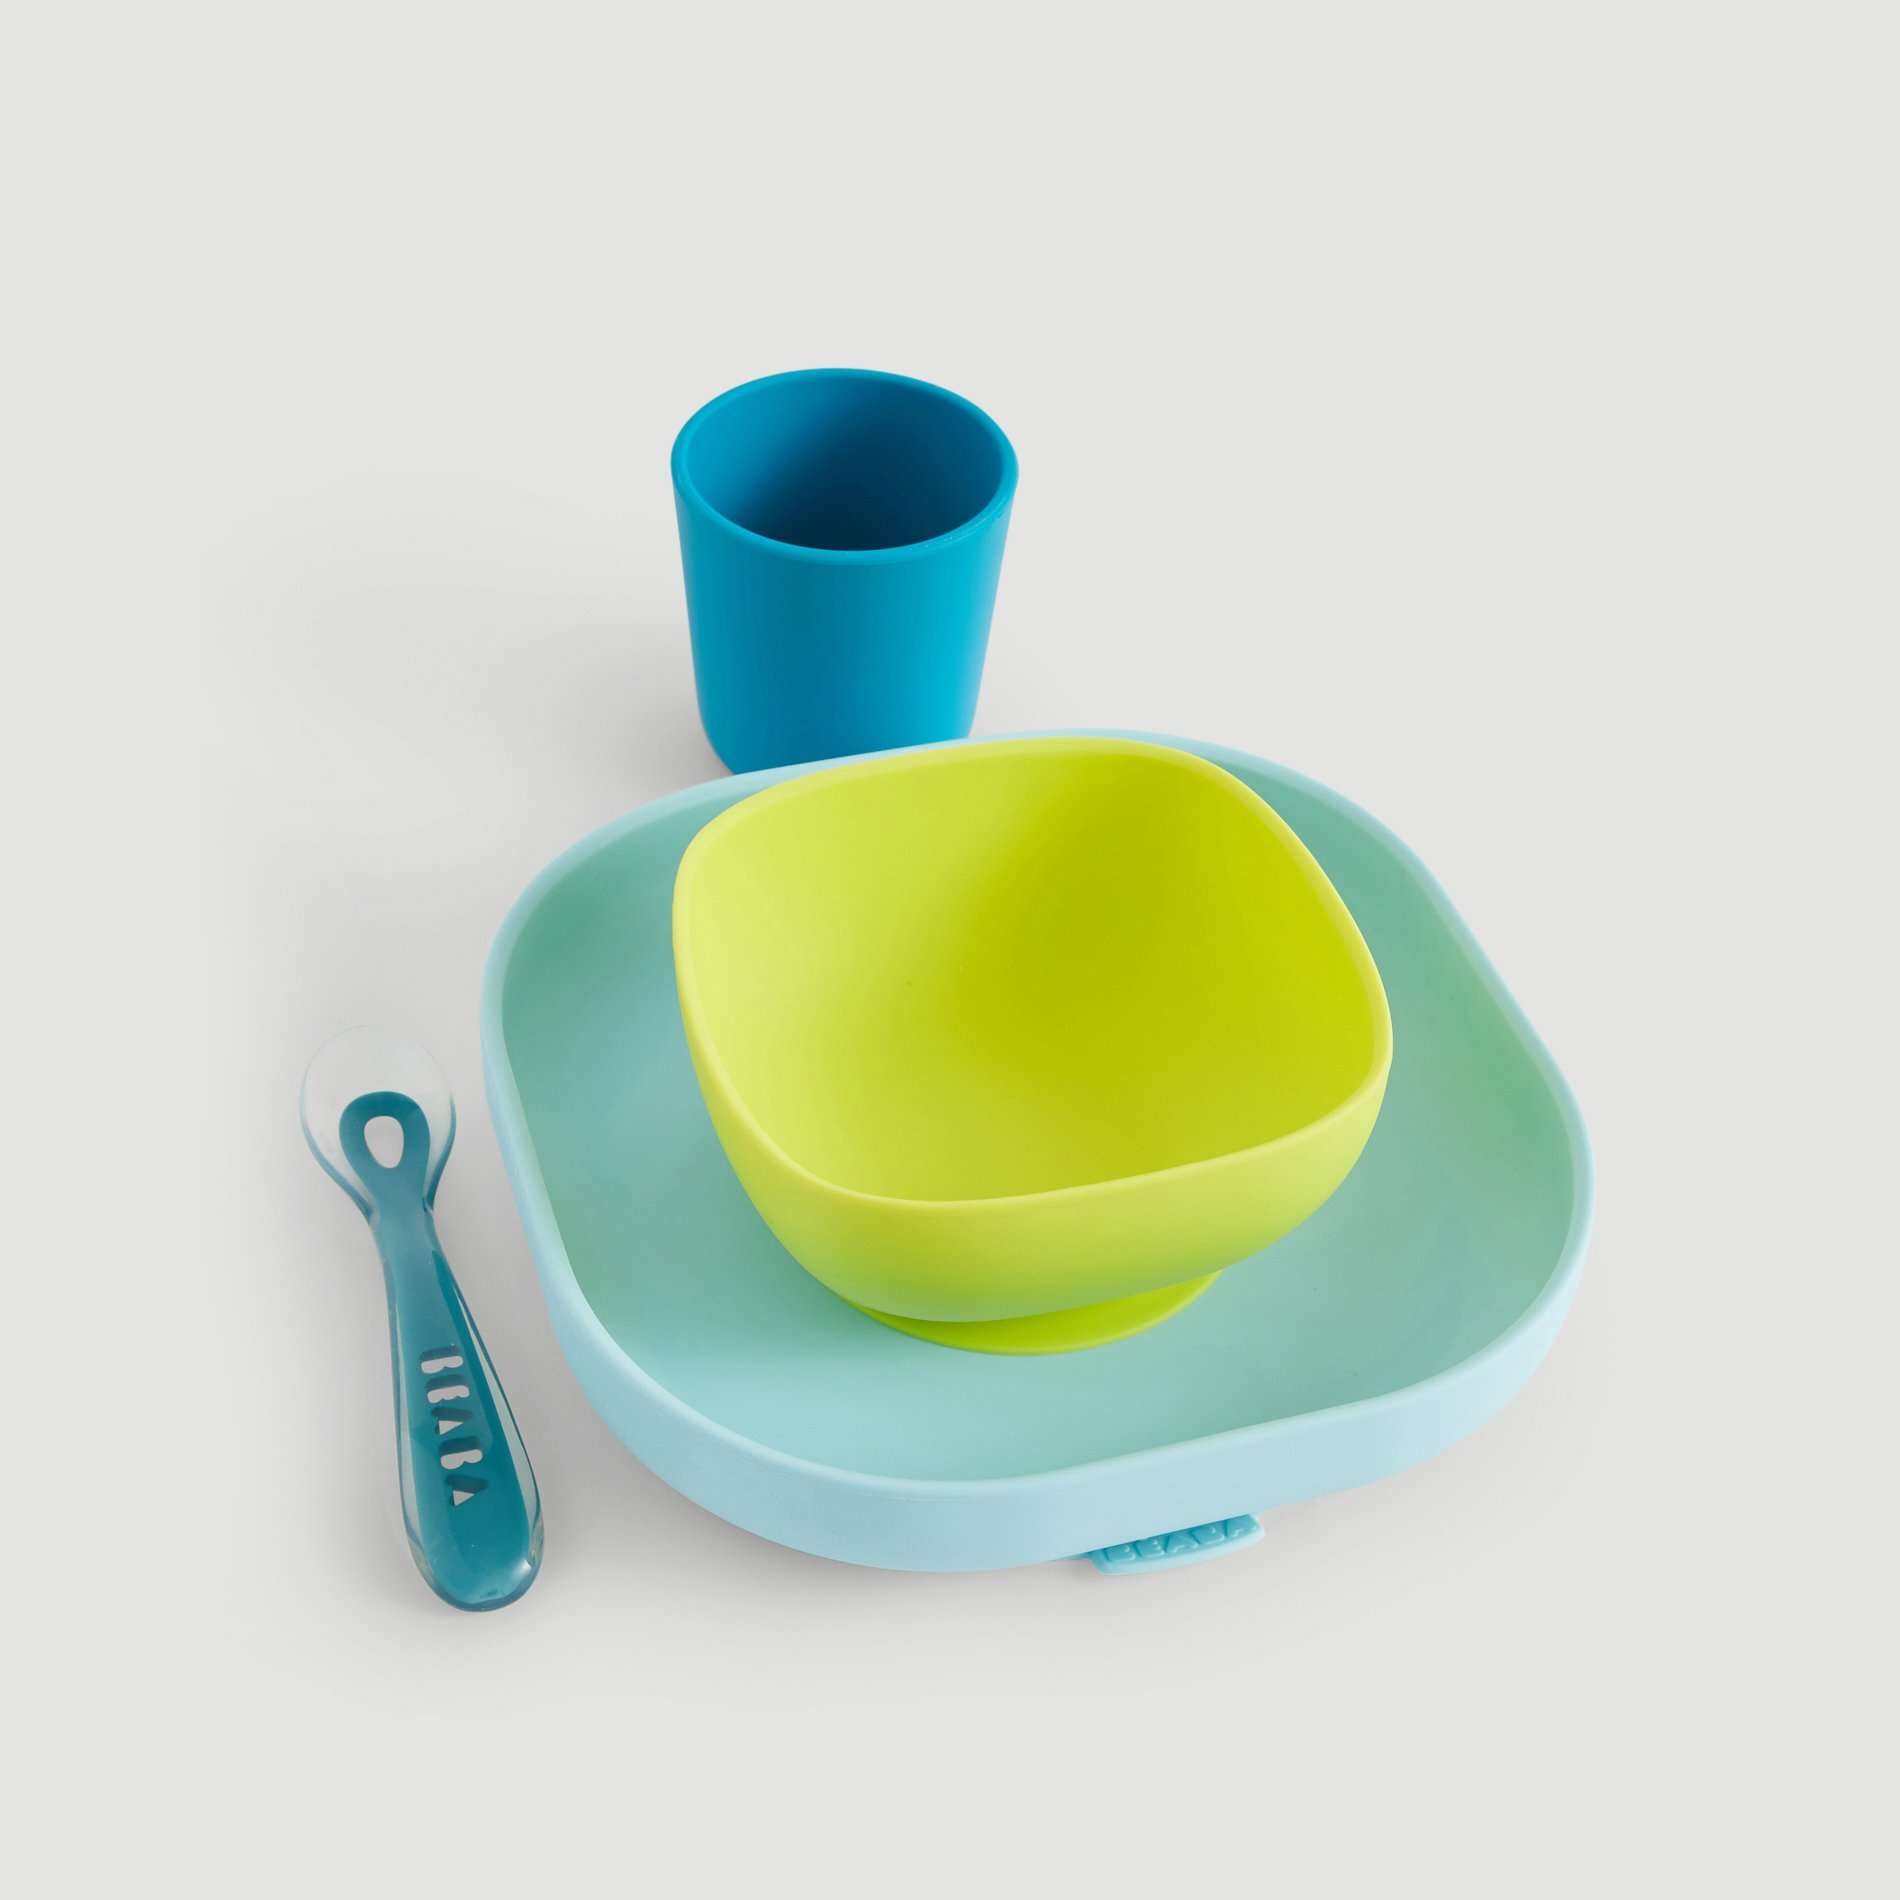 Test et avis] Le set repas silicone de Beaba - une vaisselle tout terrain